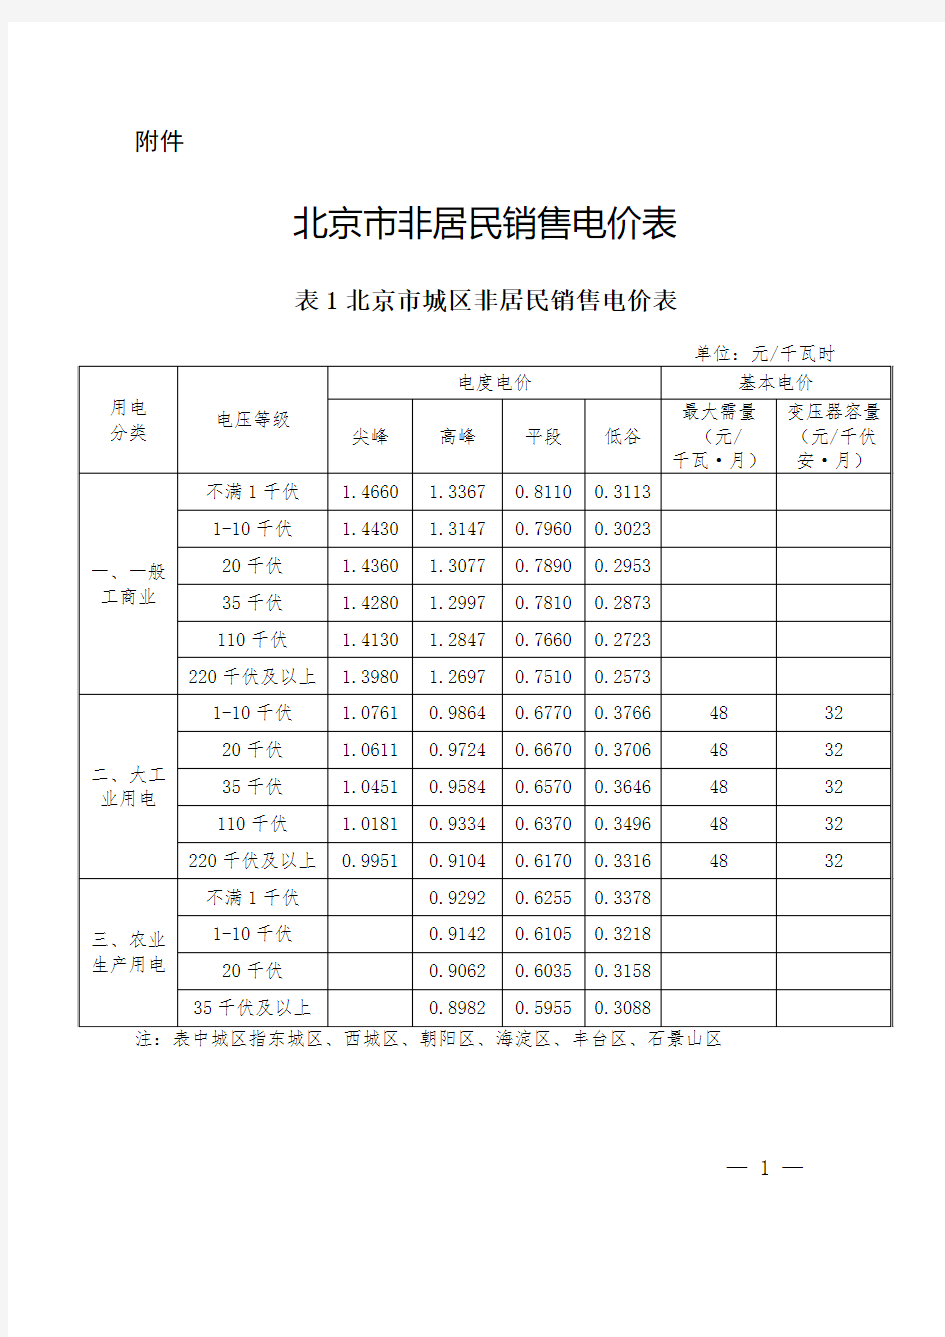 北京市非居民销售电价表